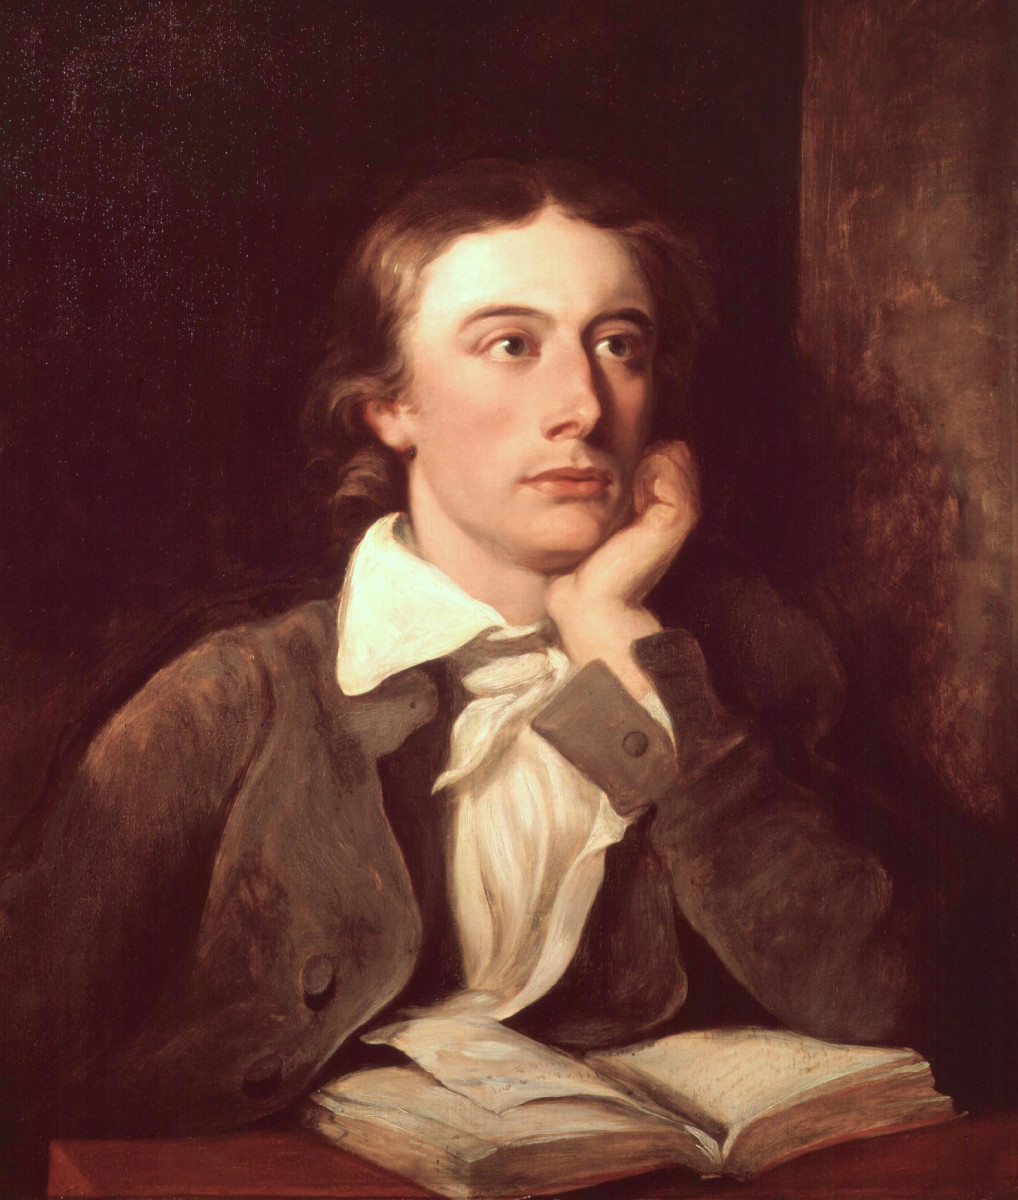 A portrait of John Keats by William Hilton